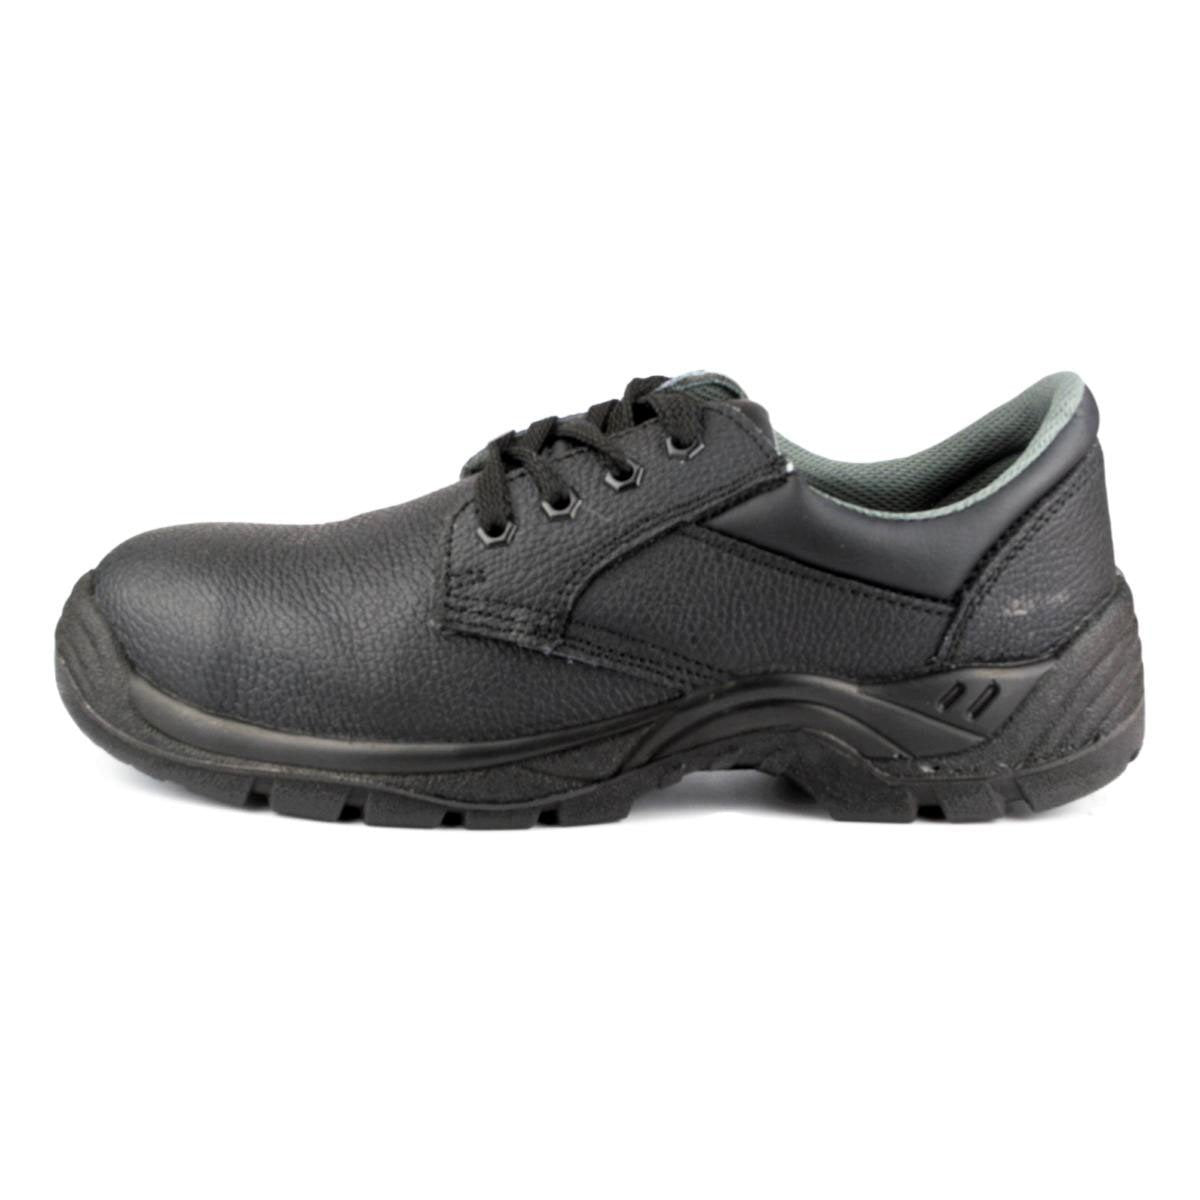 Men's Steel Toe Cap Shoe in Black - Watney Shoes 